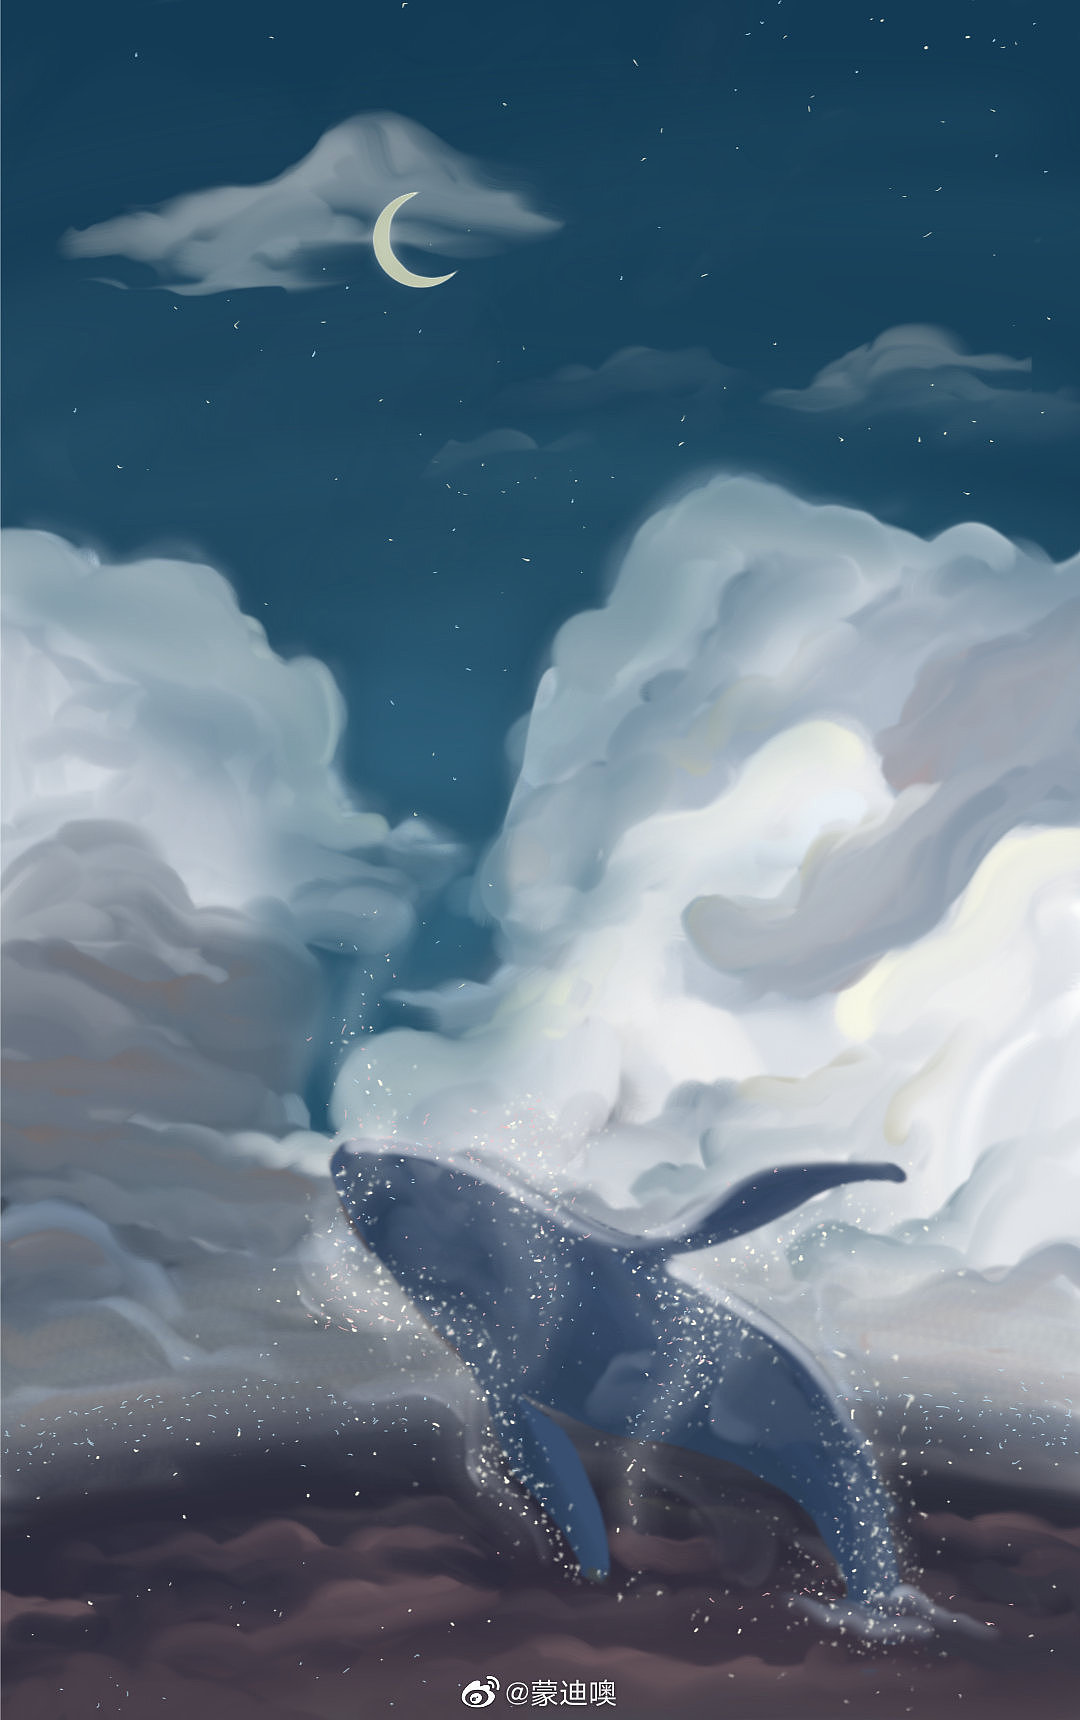 鲸鱼与星河的会面.